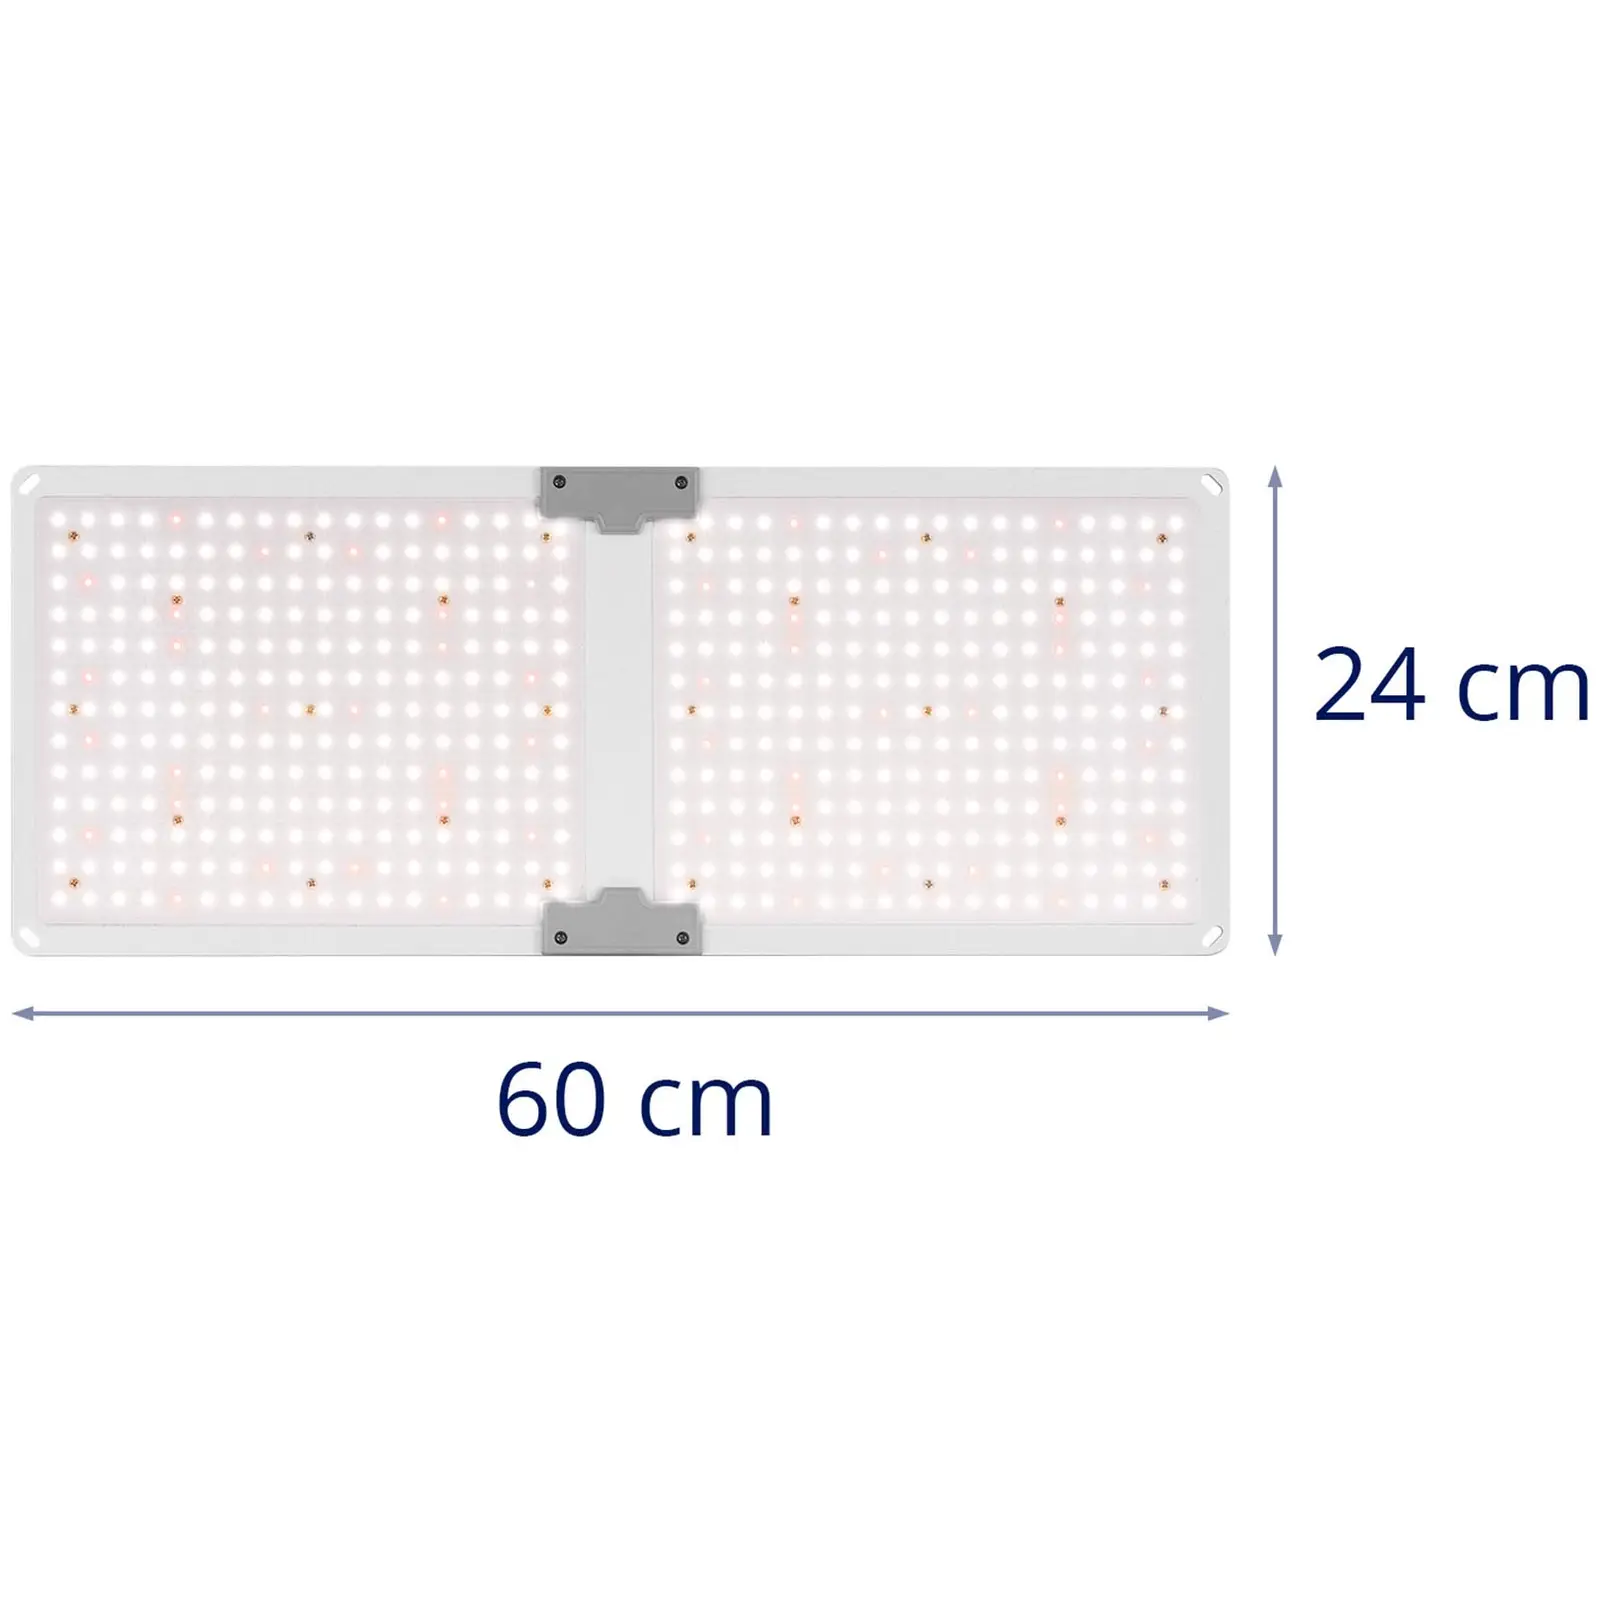 LED Grow Light - Full spectrum - 2,000 W - 468 LEDs - 20,000 lumens